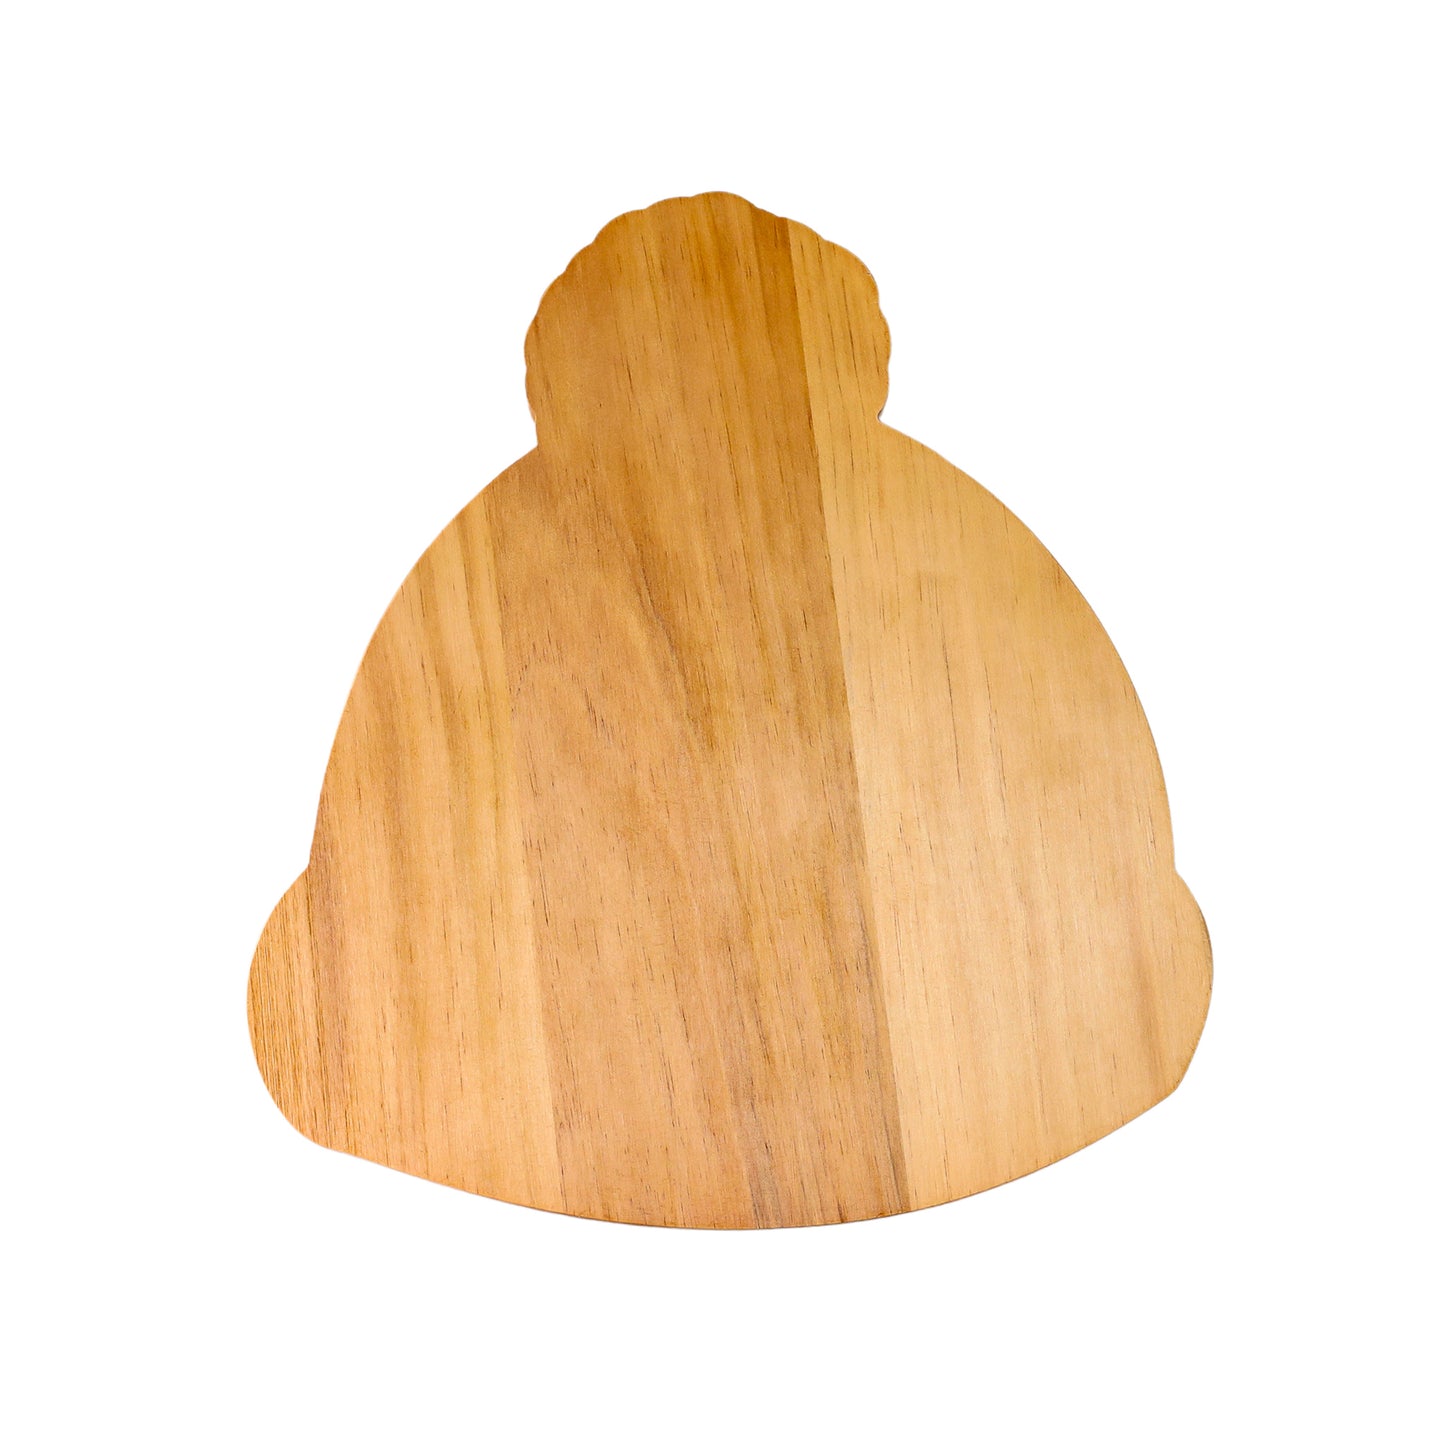 Winter Hat Wood Board - 13.5" x 15"